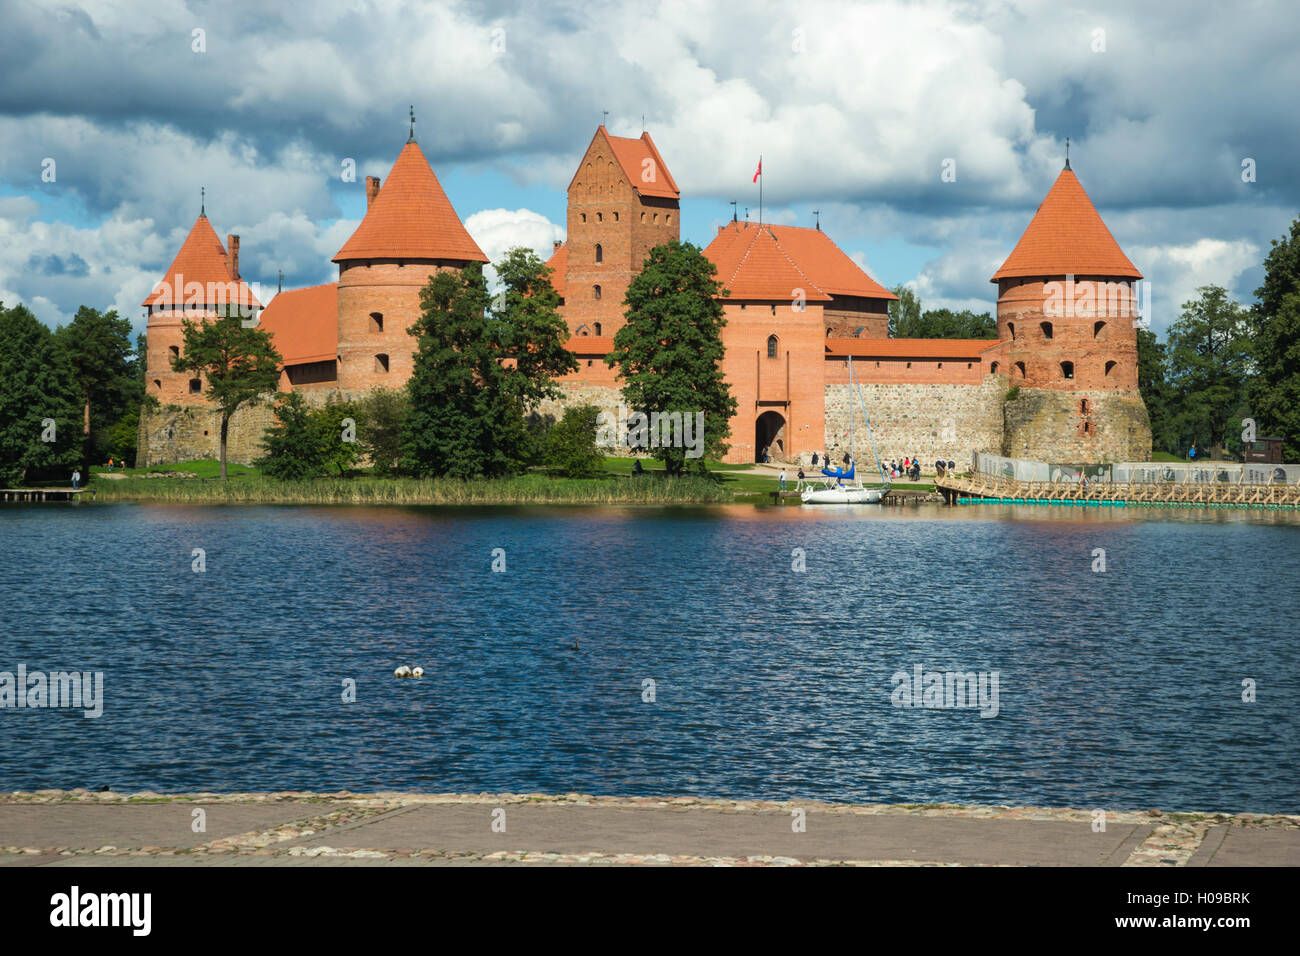 Trakai island castle on Lake Galve in Lithuania Stock Photo